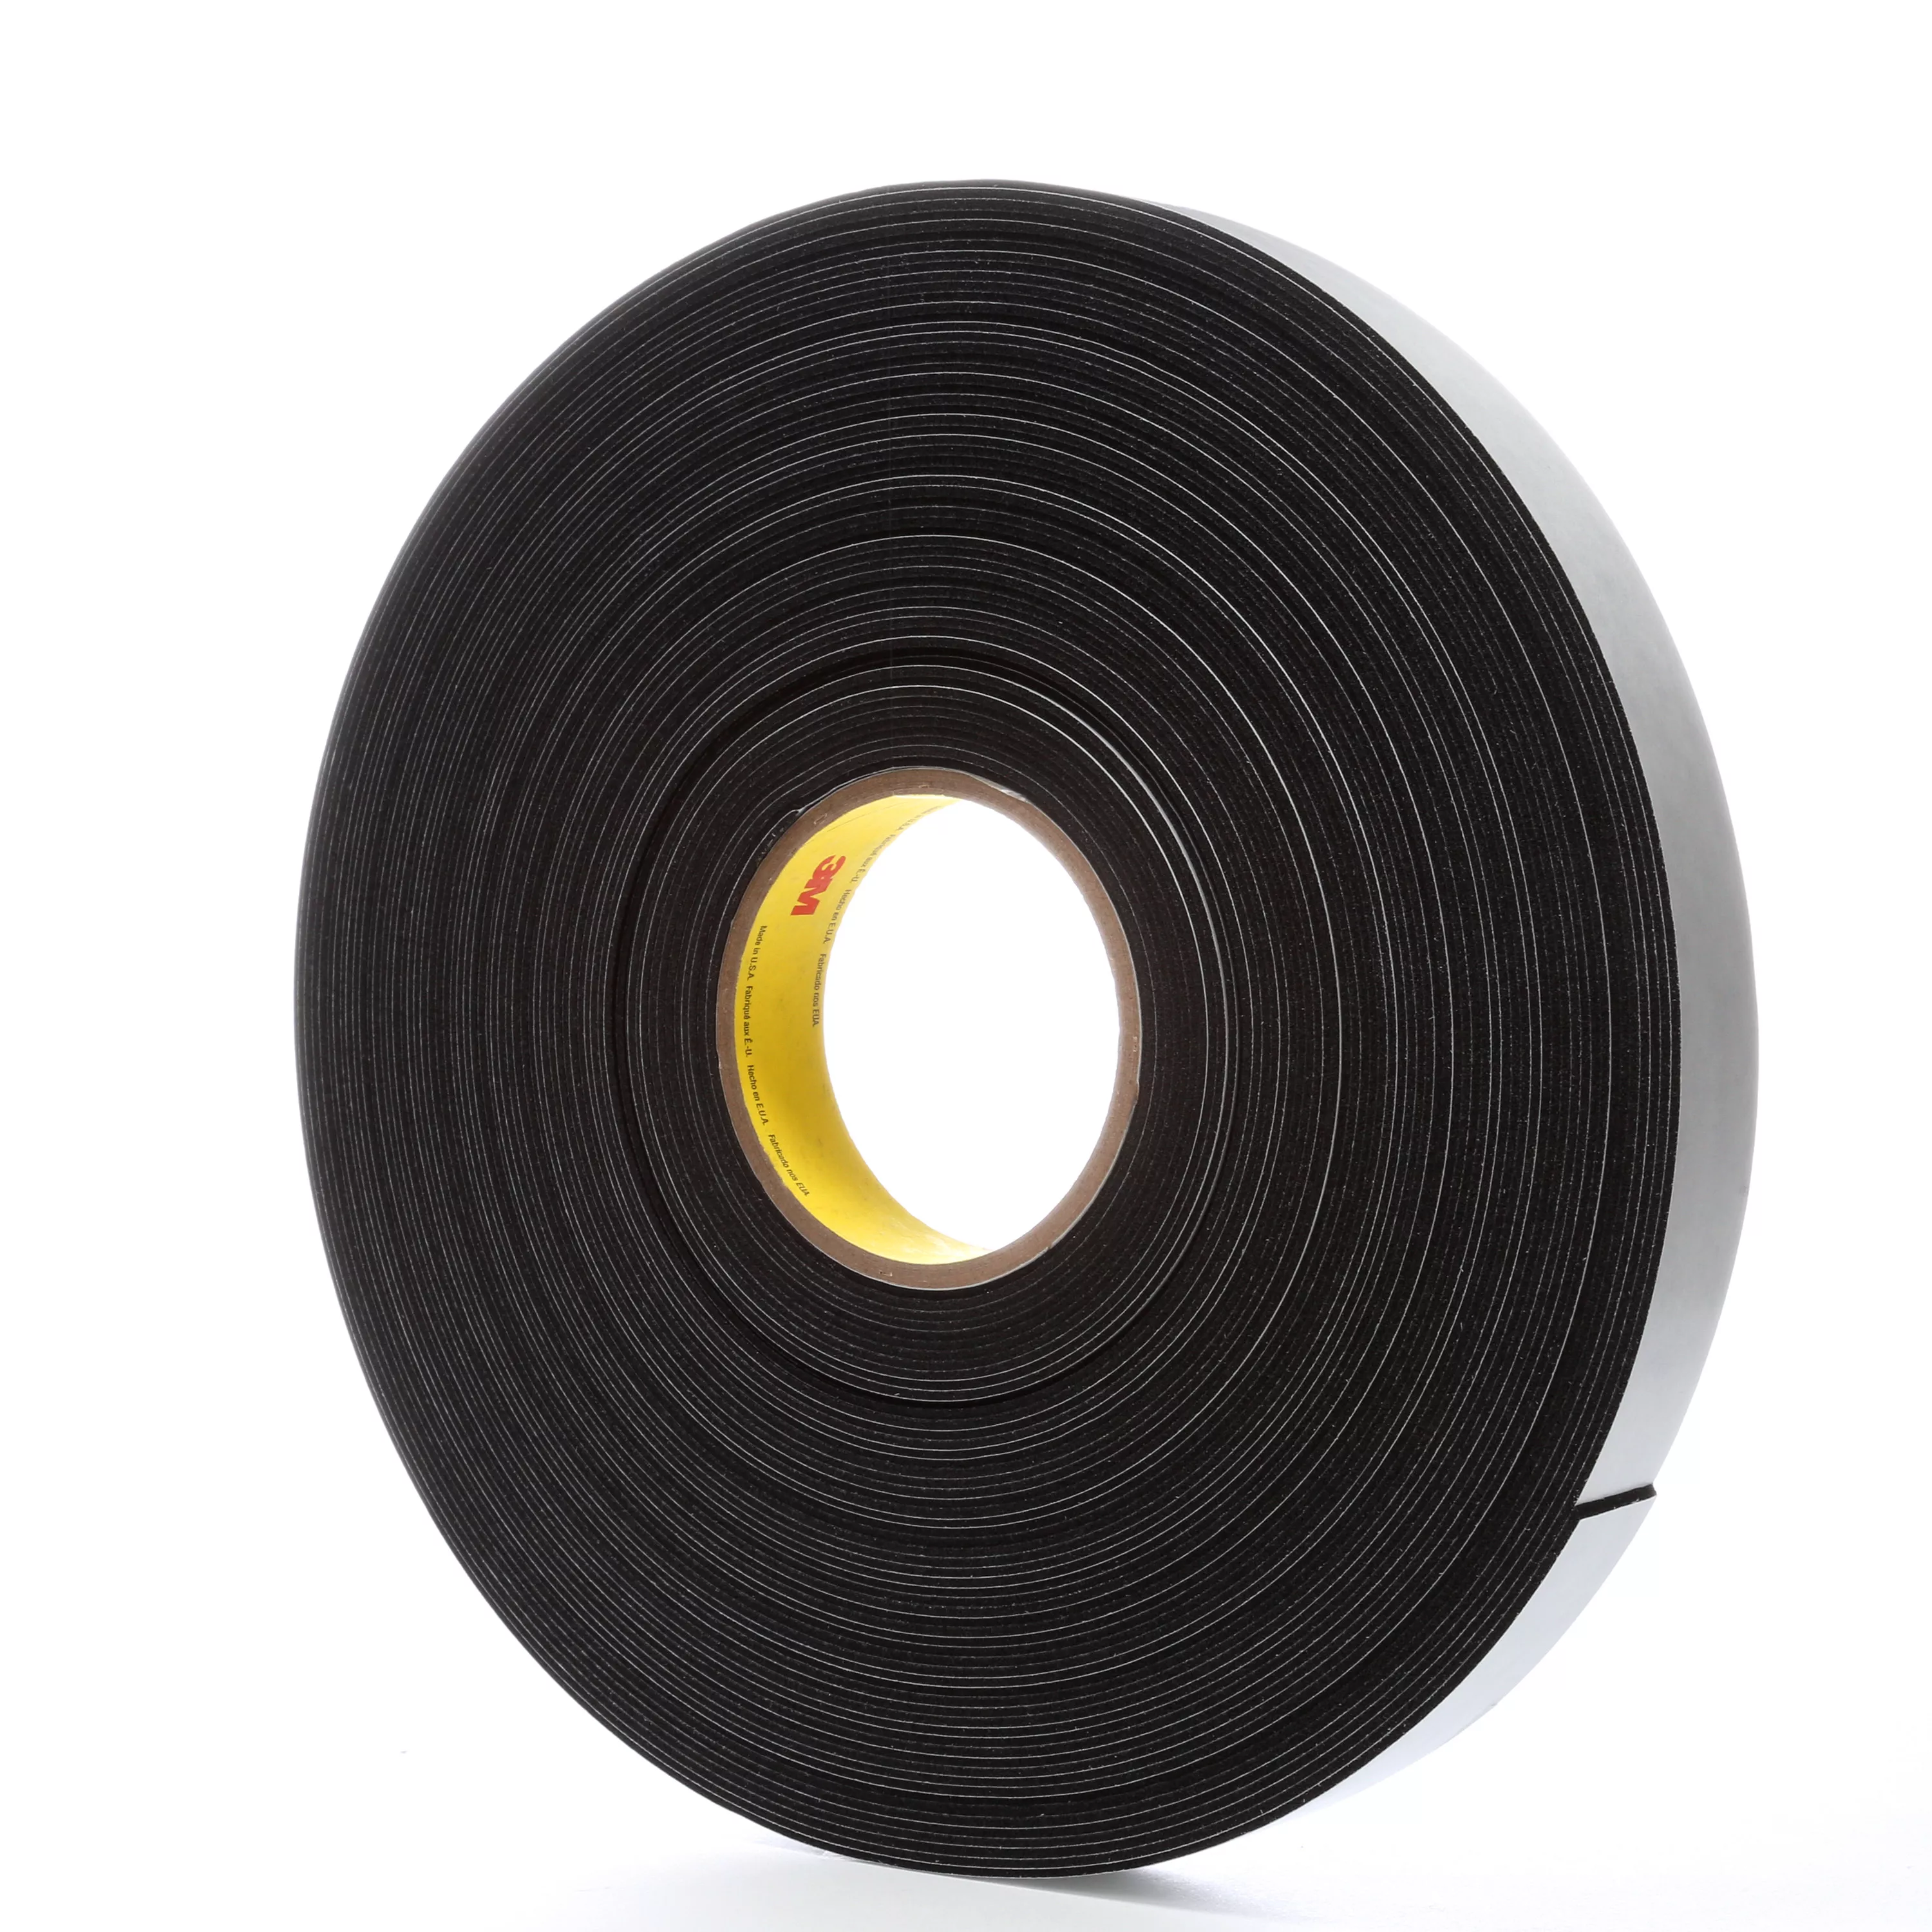 3M™ Venture Tape™ Vinyl Foam Tape 1714, Gray, 1 1/2 in x 50 ft, 250 mil,
8 Roll/Case